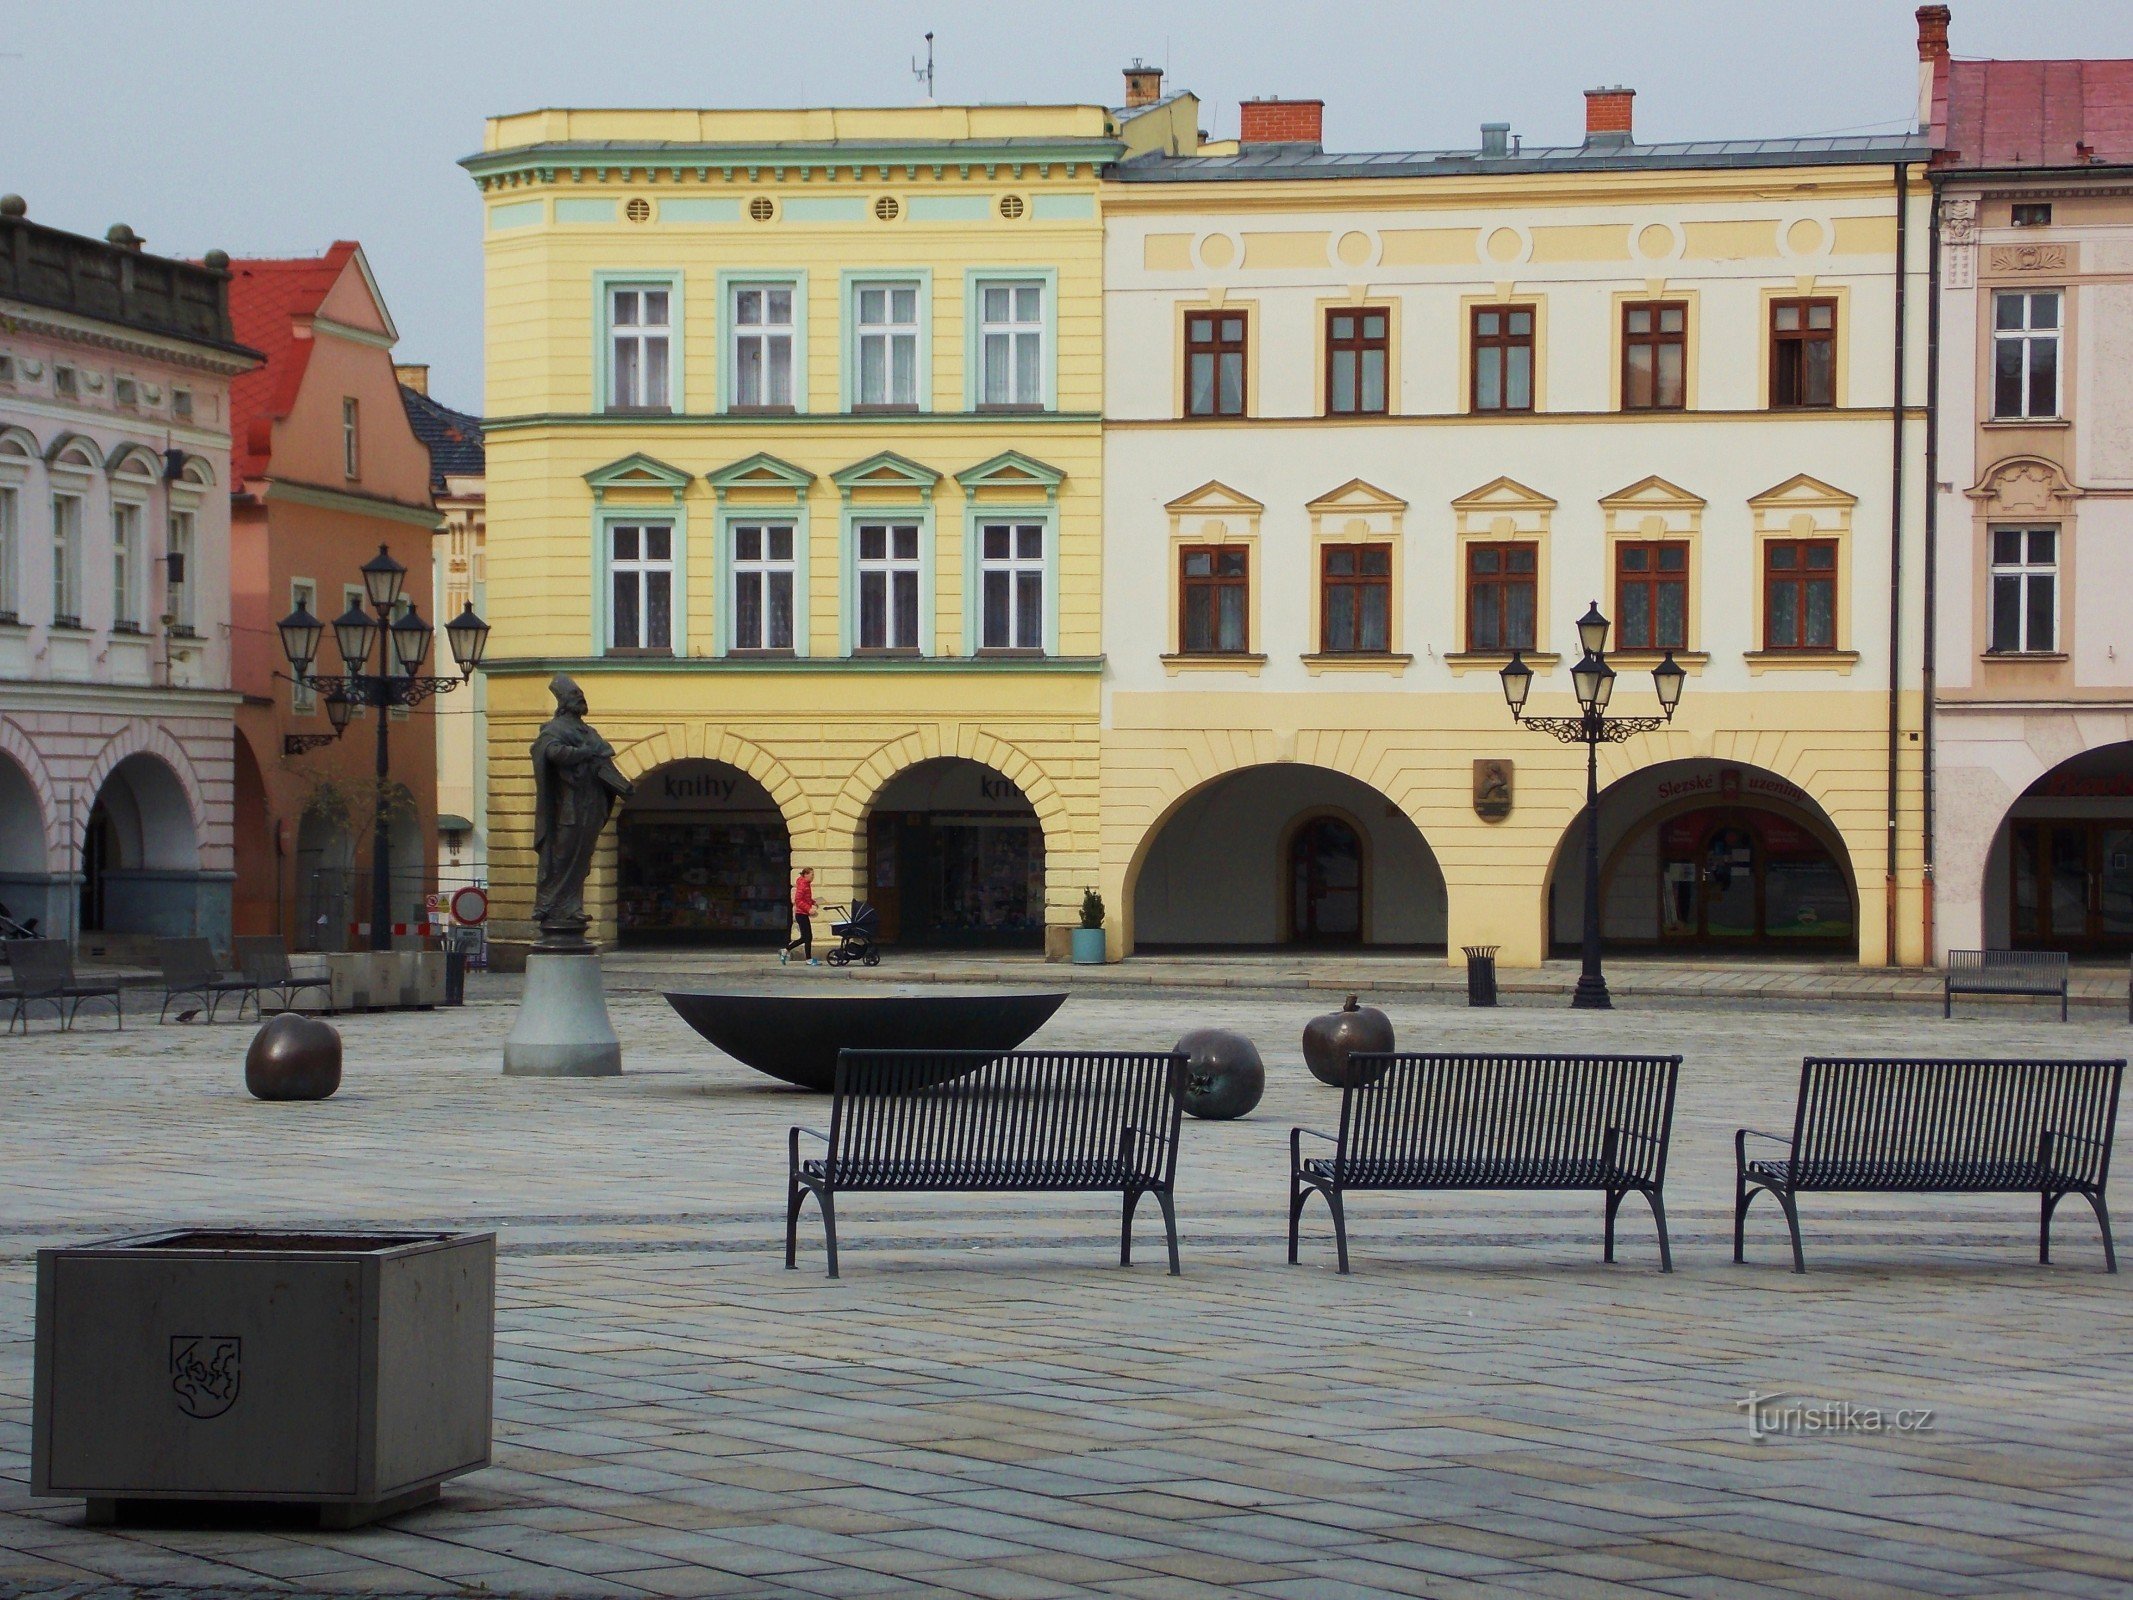 Masaryk-pladsen - historisk centrum i Nové Jičín